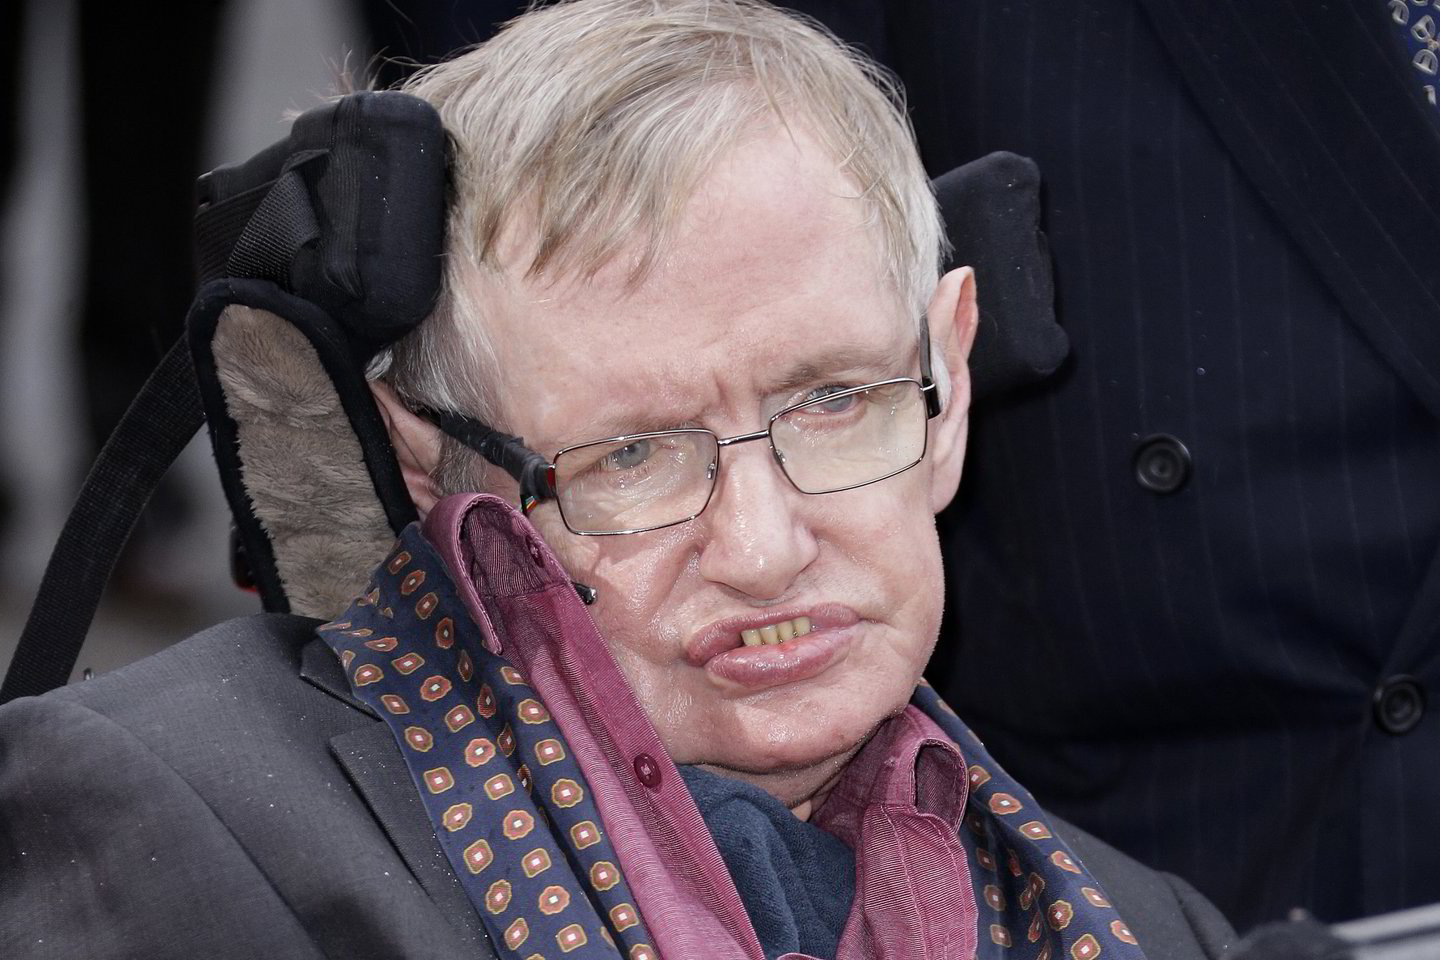  Medikai stebėjosi, kad S.Hawkingas net 55 metus grūmėsi su sunkia liga.